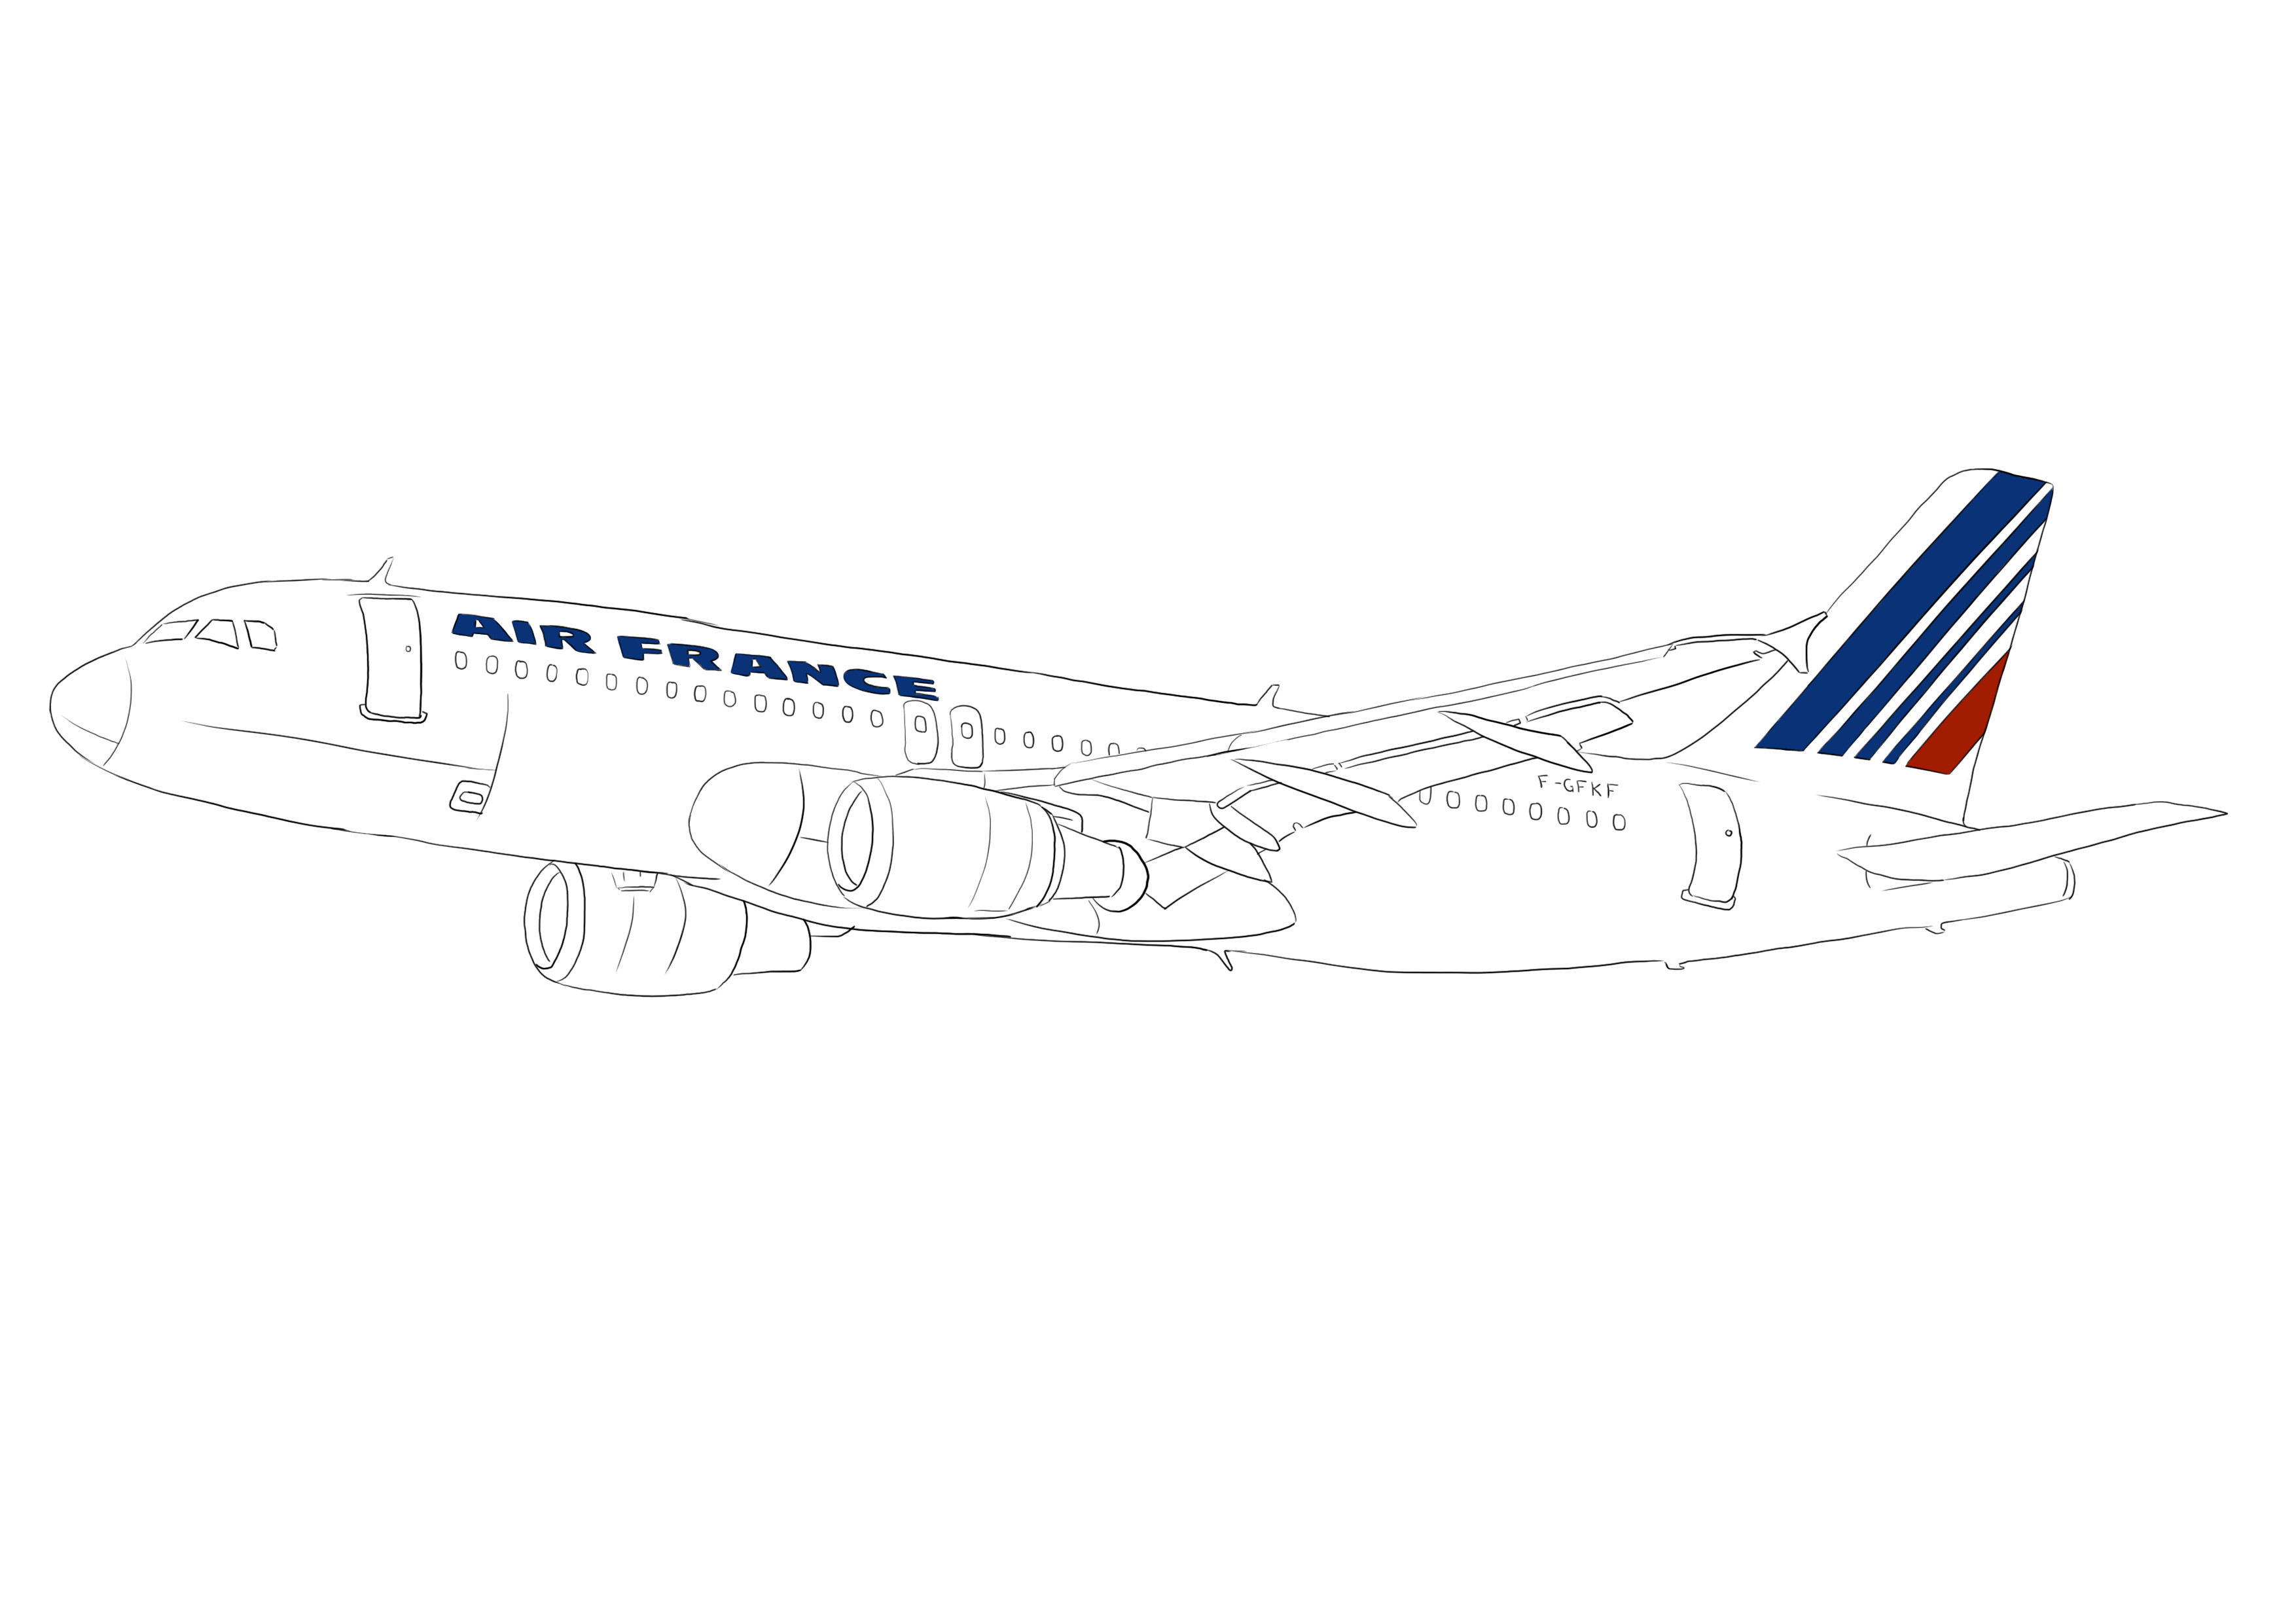 Coloriser le bleu et le rouge sur le logo et rayures de l’avion